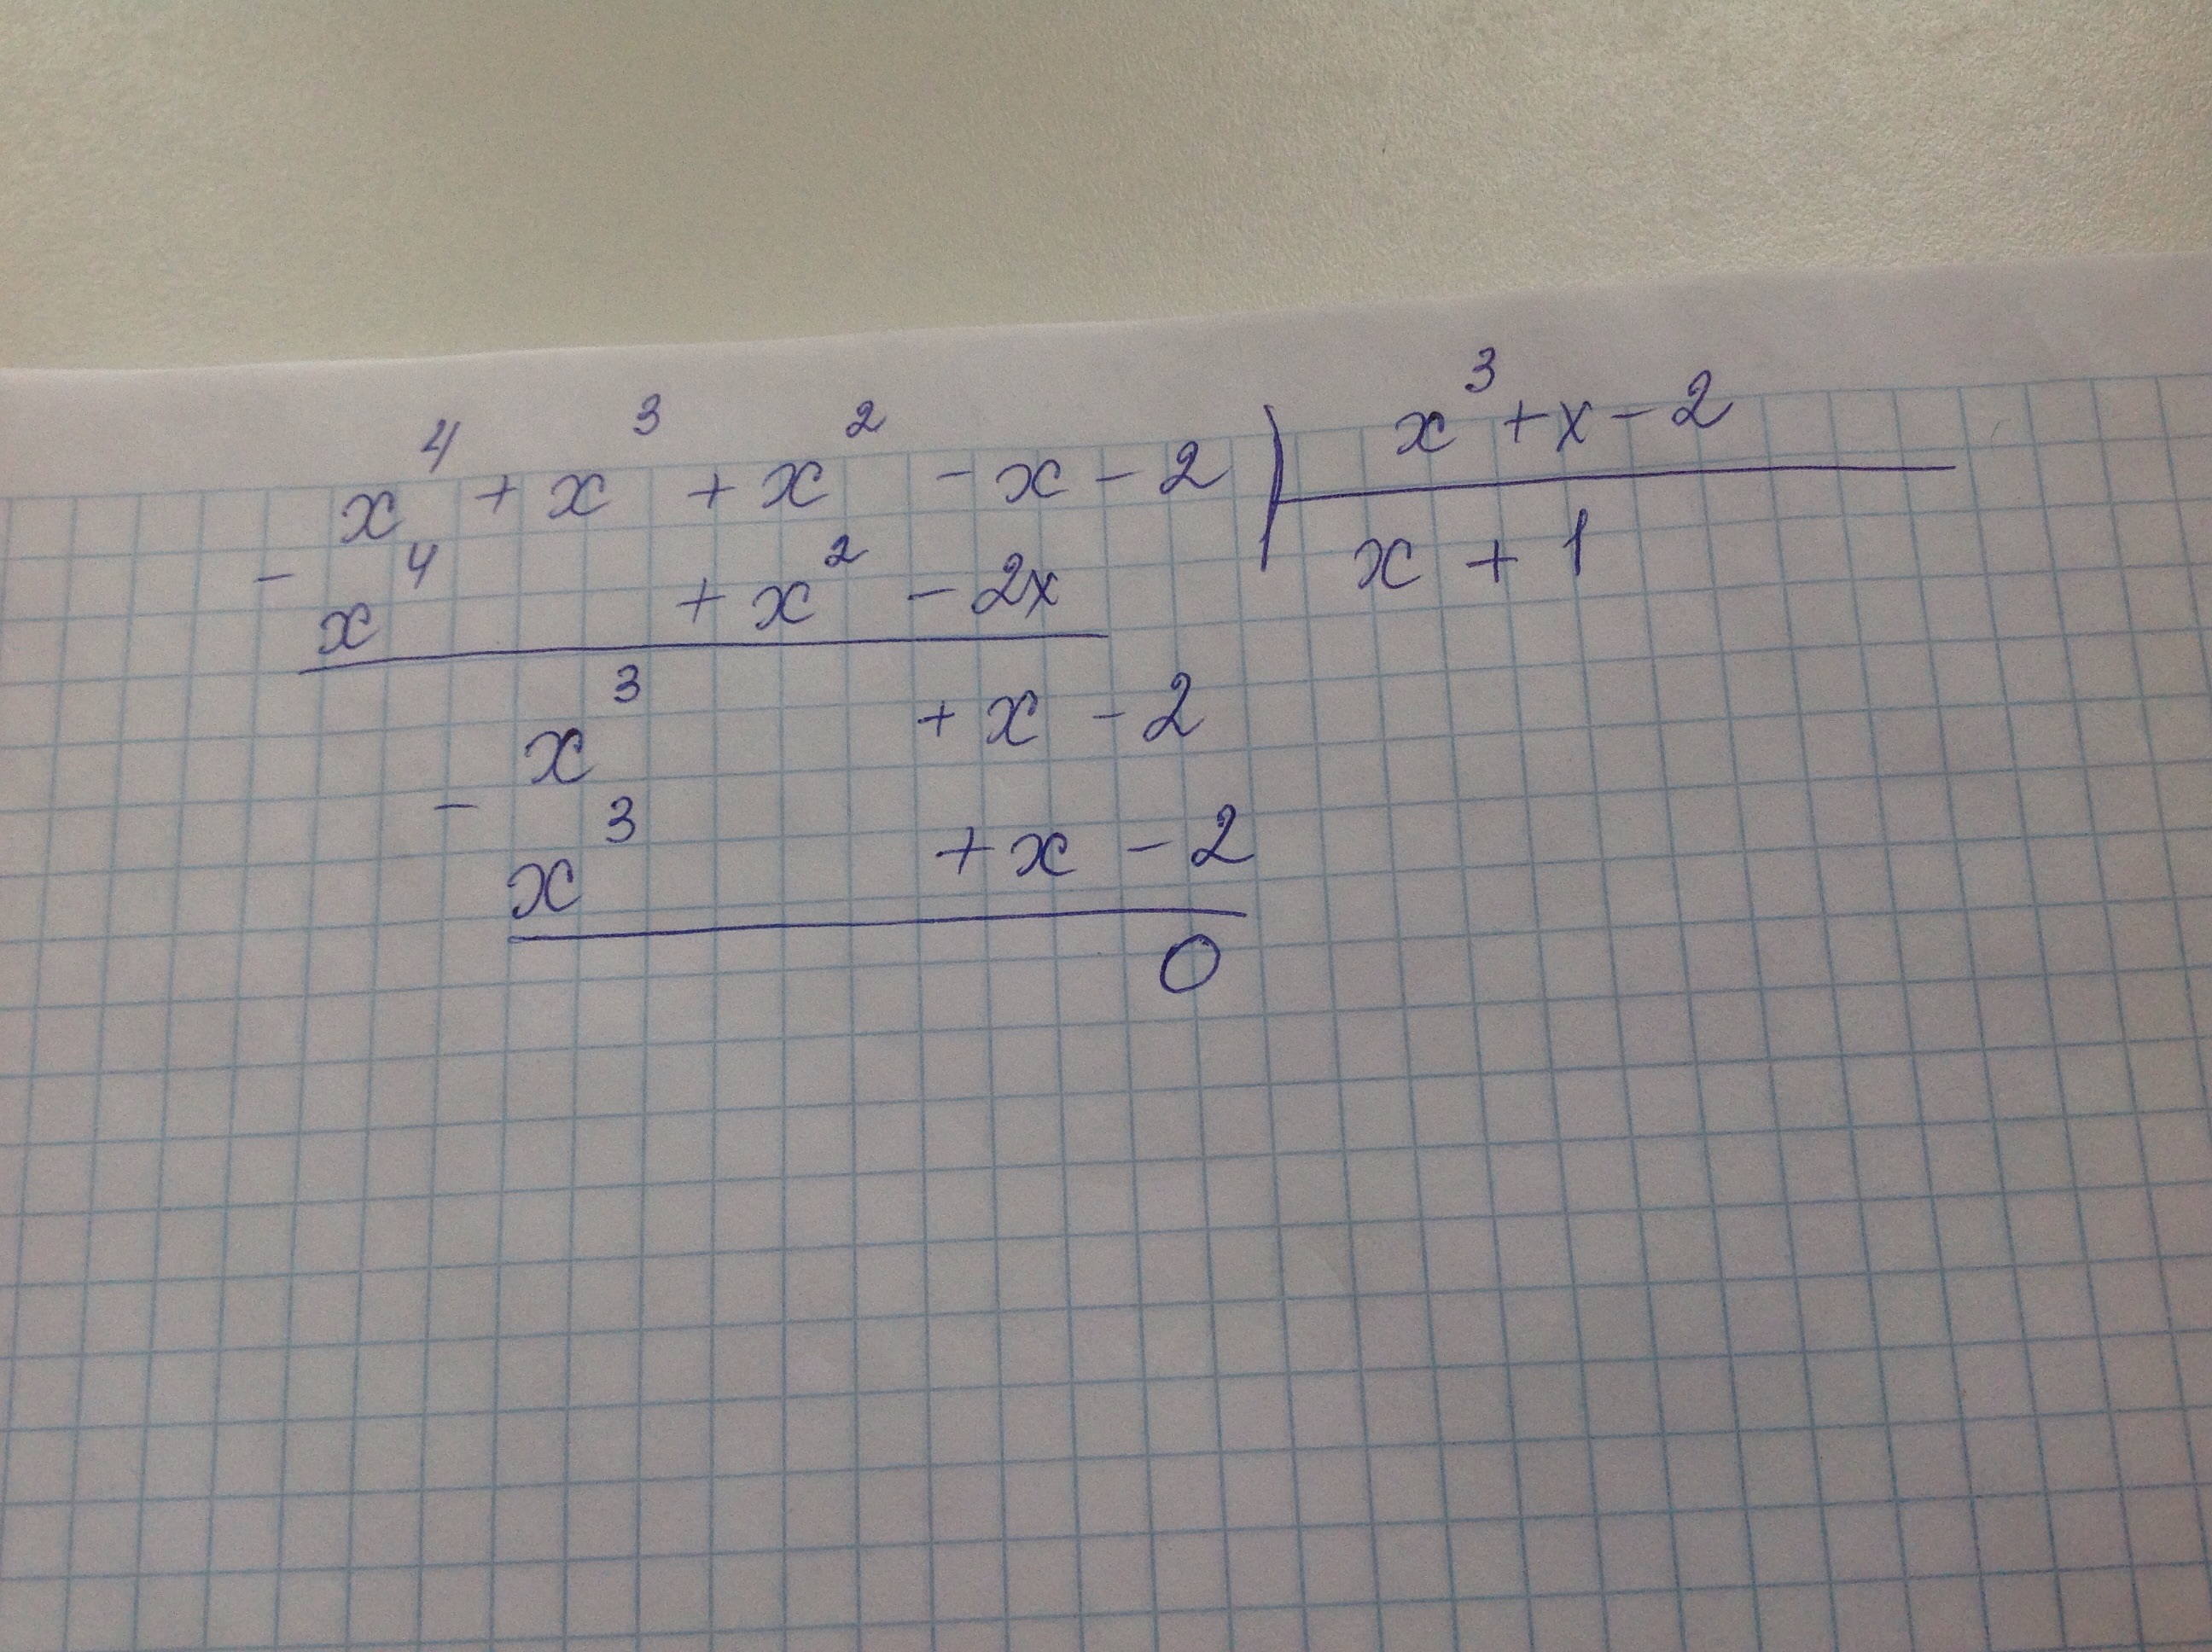 6 5x 32 5. Разделите уголком 3x3-2x2+7x-4. Разделить многочлен 2x4-3x3-x2-+4x. 2x 2 4x 4 x 2 5x -3 x 2. Выполнить деление многочленов: (2 x 4+2 x3−5 x2−2 ) : (x2+ x−2 ).